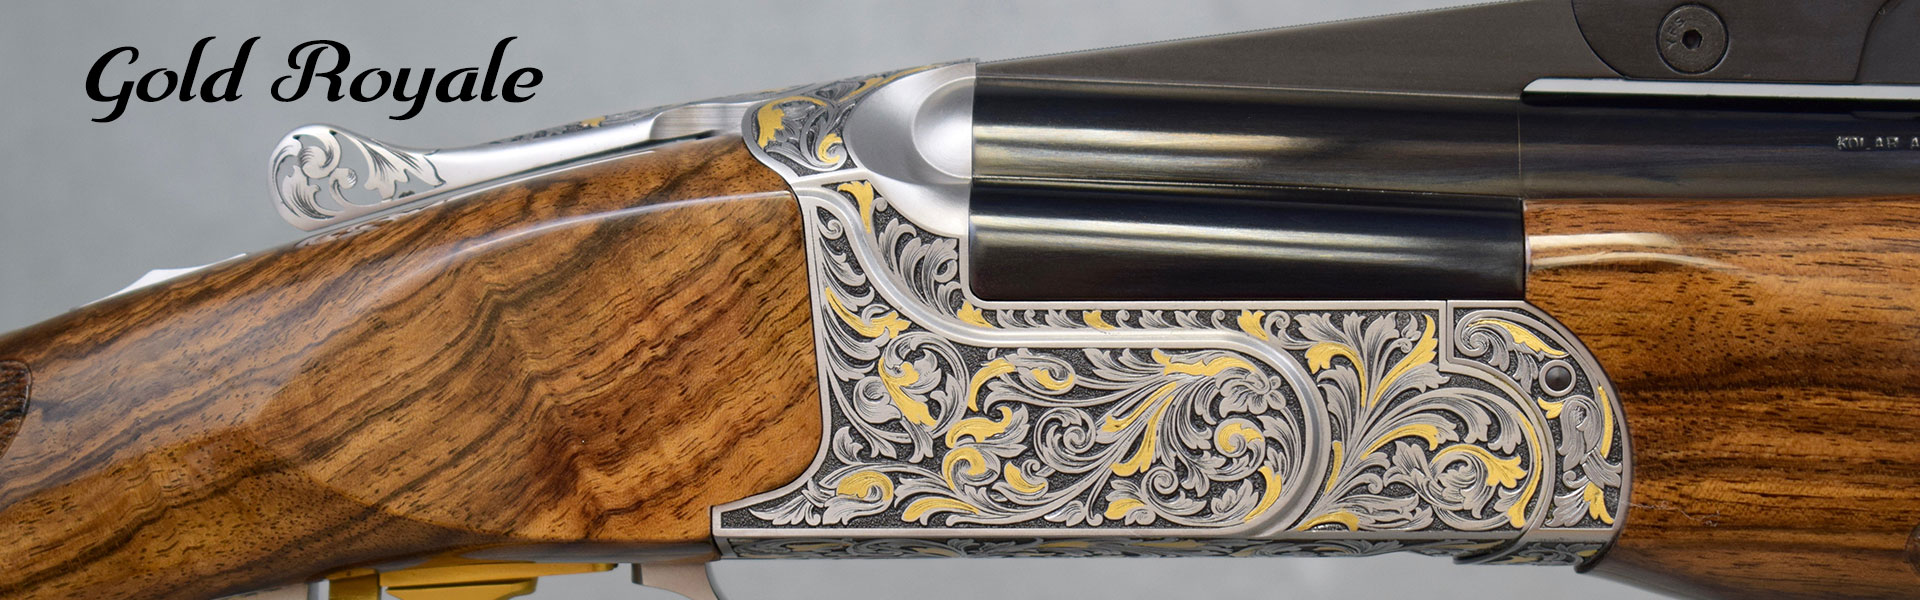 Kolar Gold Royale Shotgun Engraving